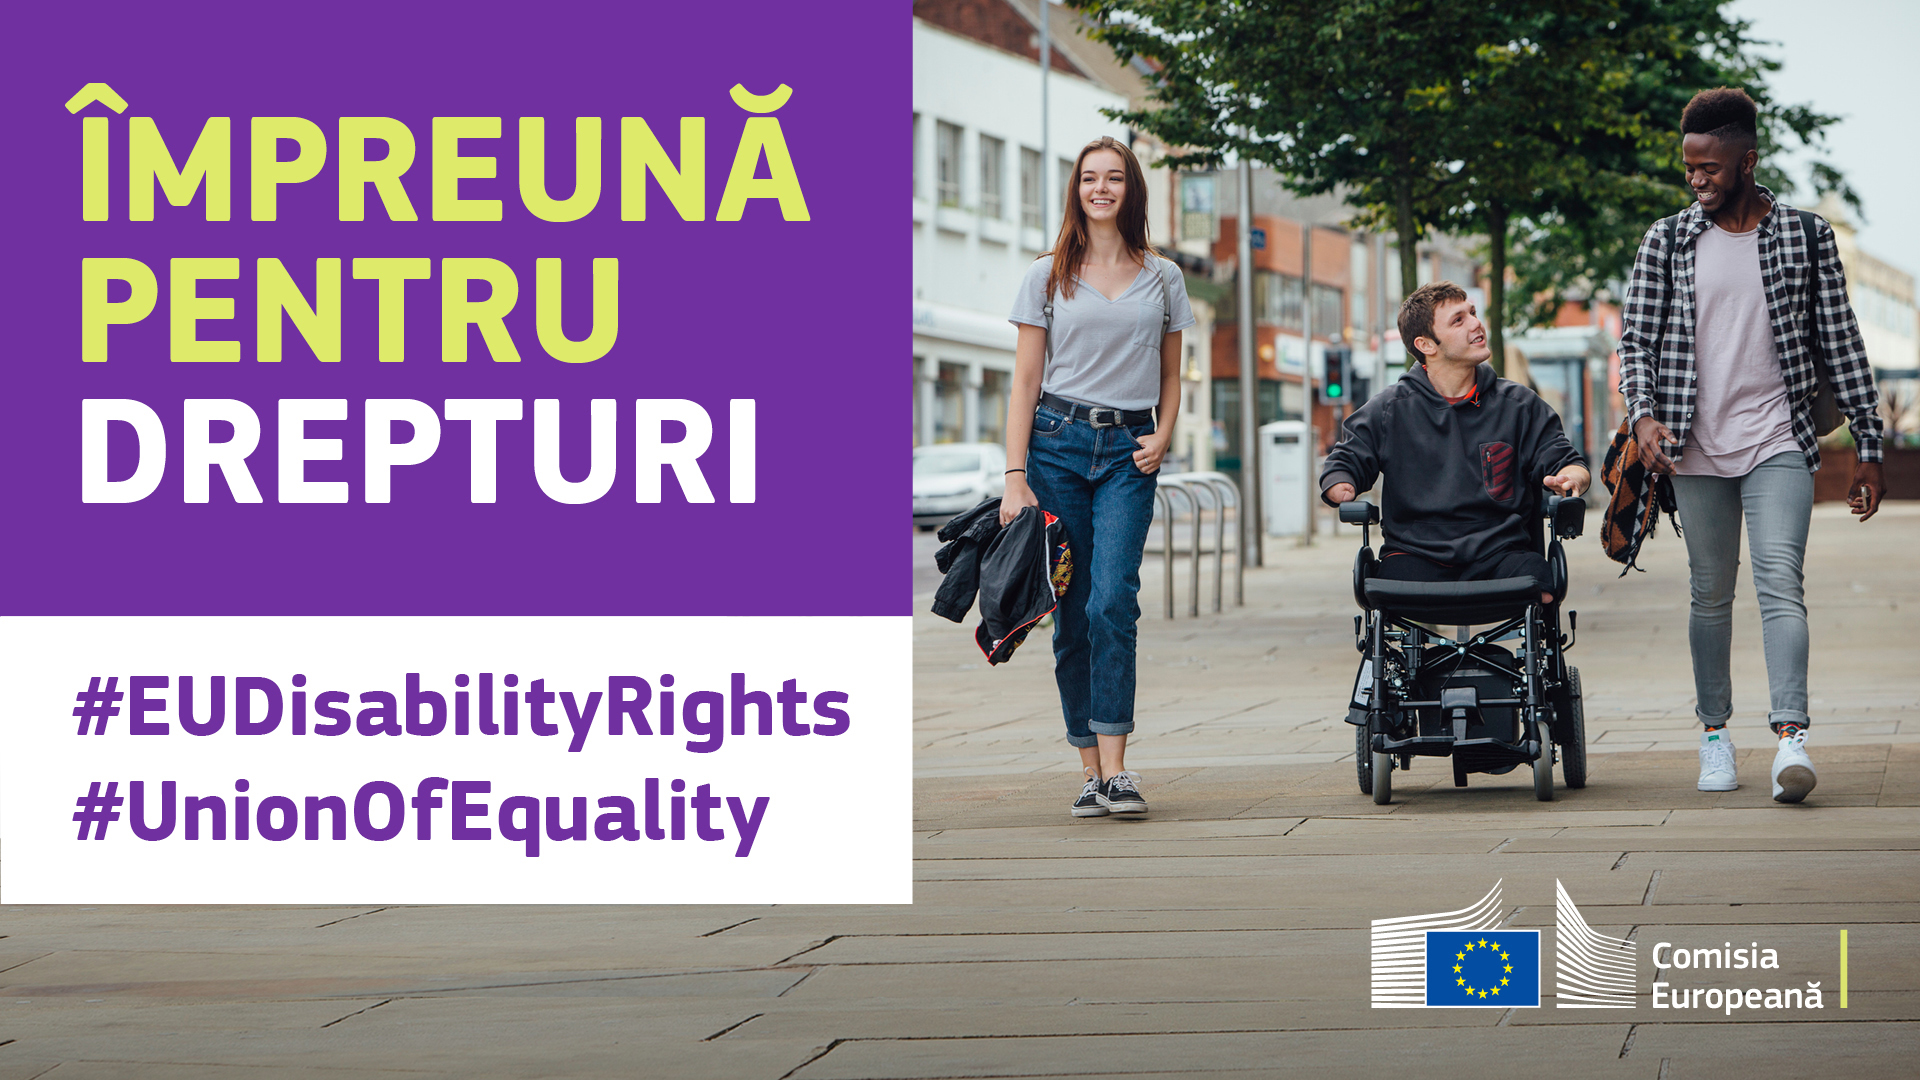 Trei tineri la plimbare prin oraș. Unul e în scaun rulant. Text: împreună pentru drepturi, #EUDisabilityRights, #UnionOfEquality.